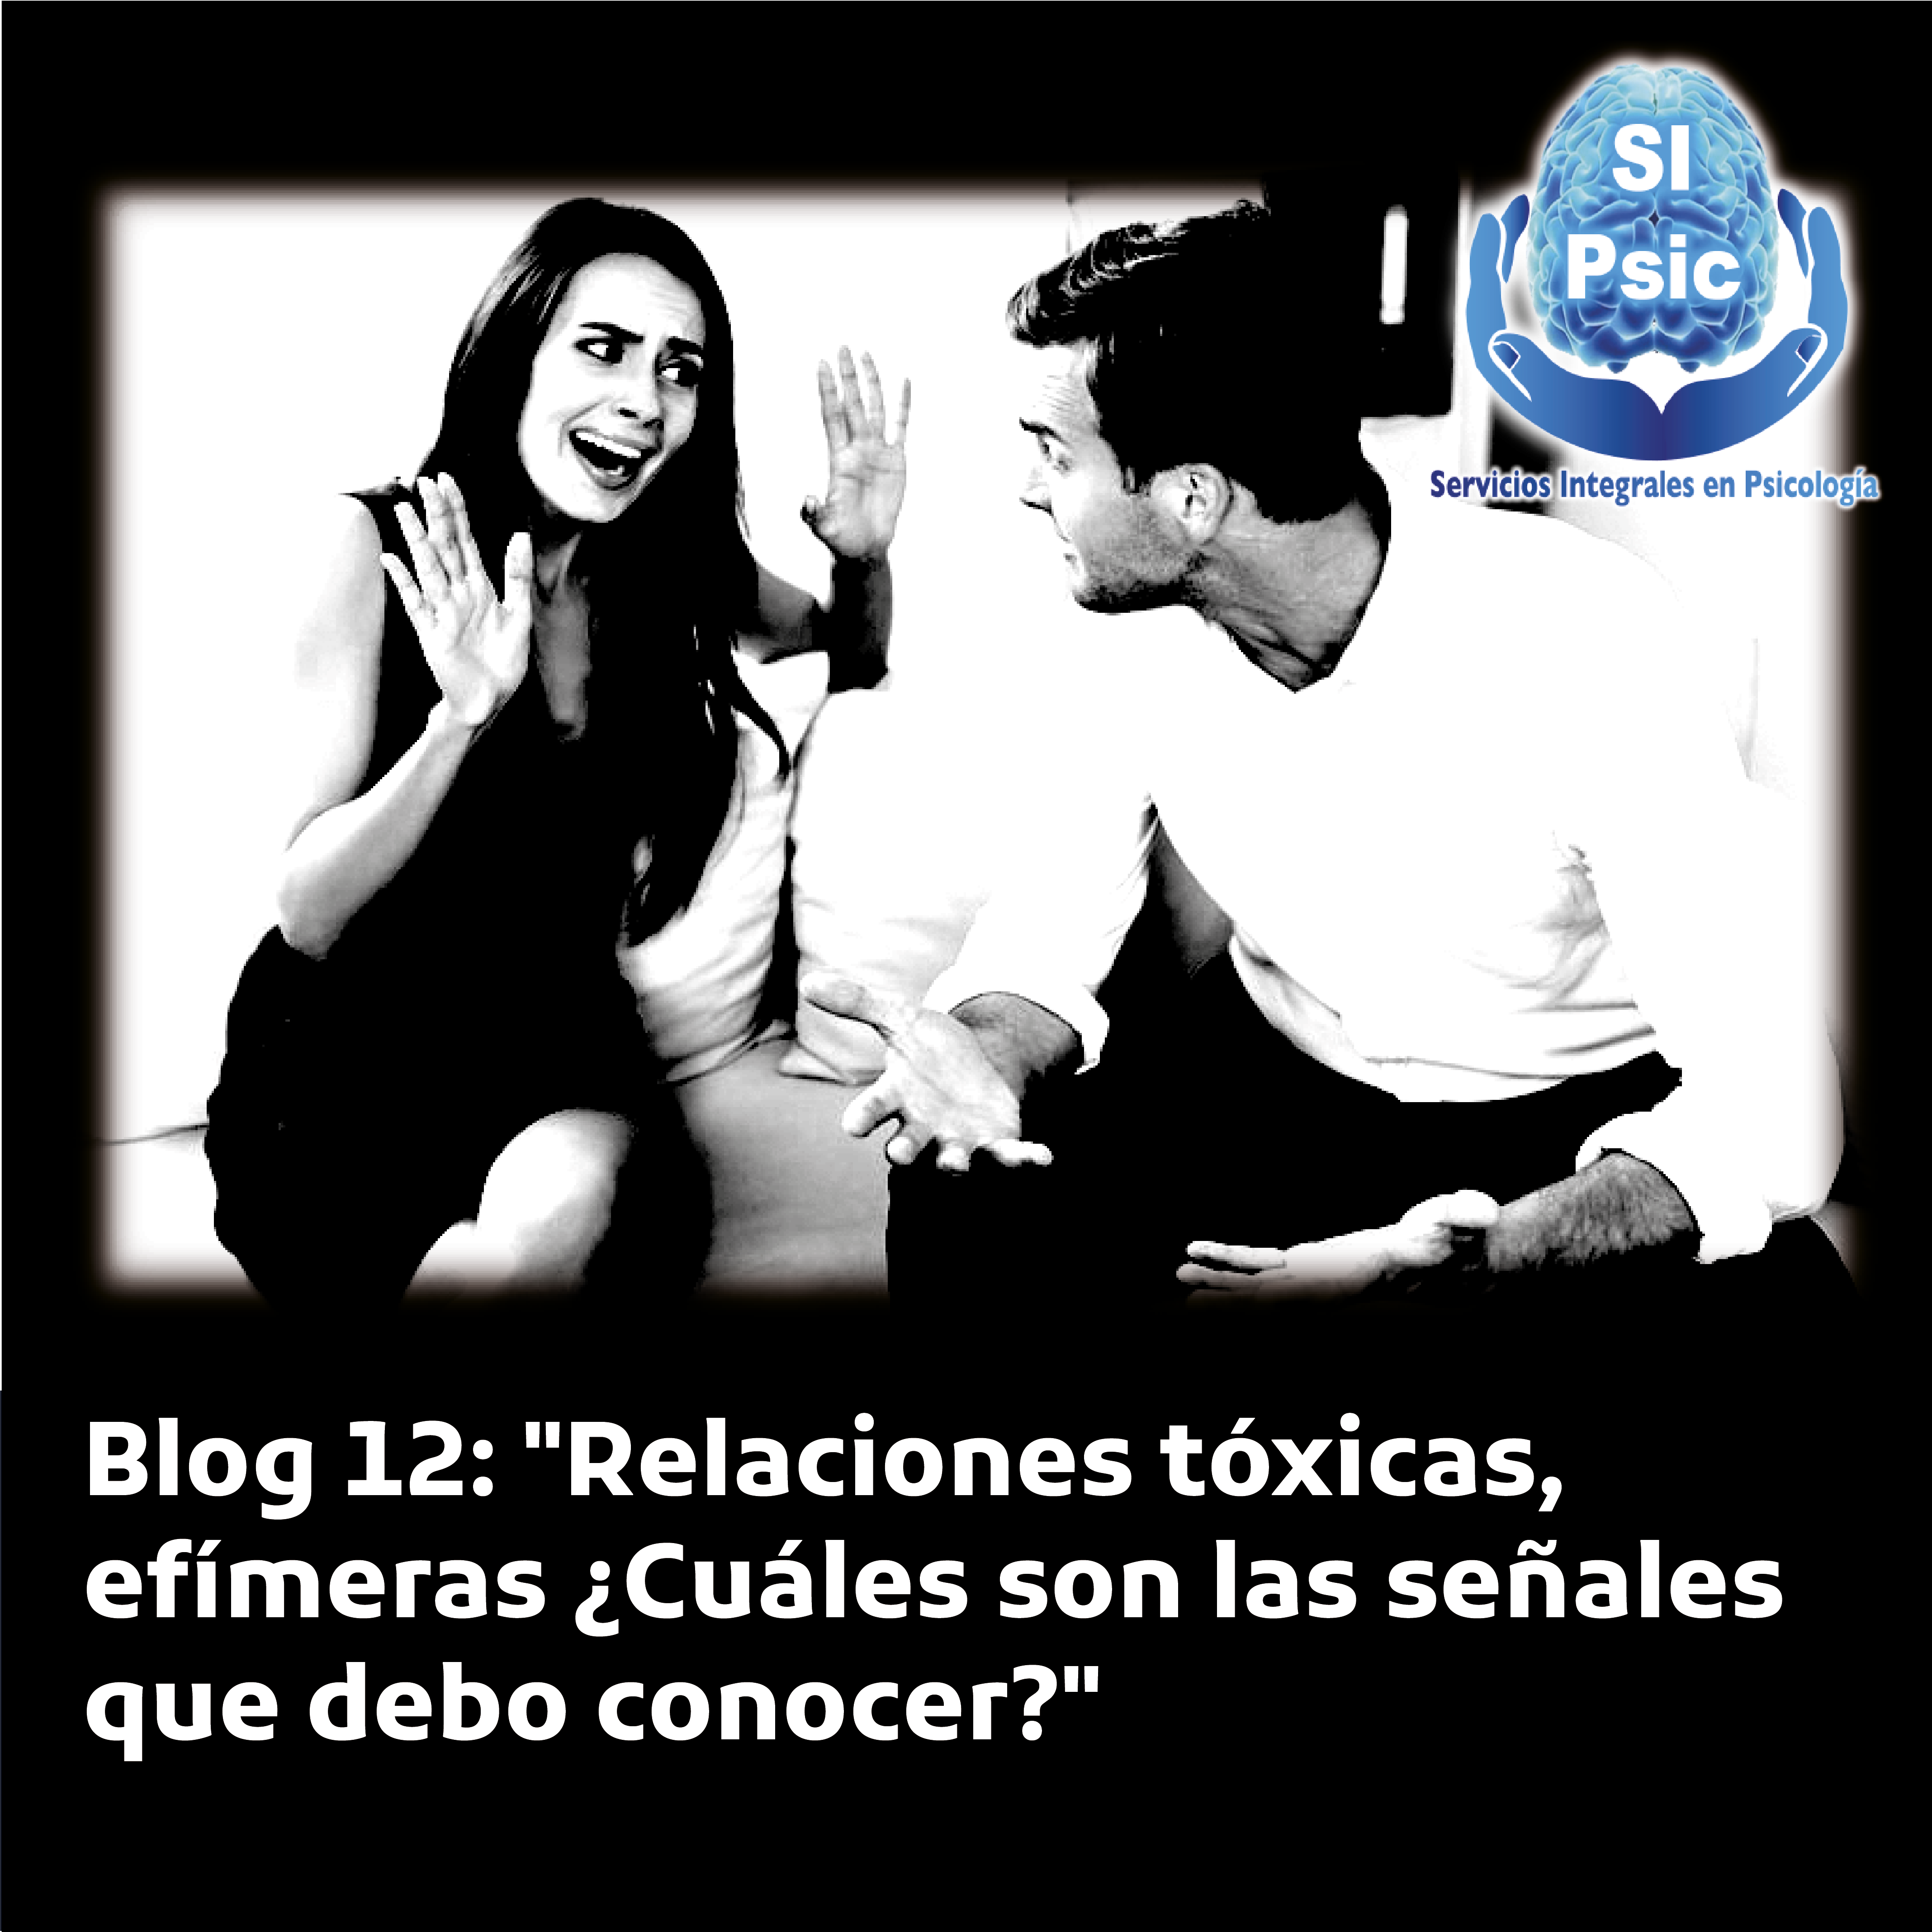 Blog 12: "Relaciones tóxicas, efímeras ¿Cuáles son las señales que debo conocer?"